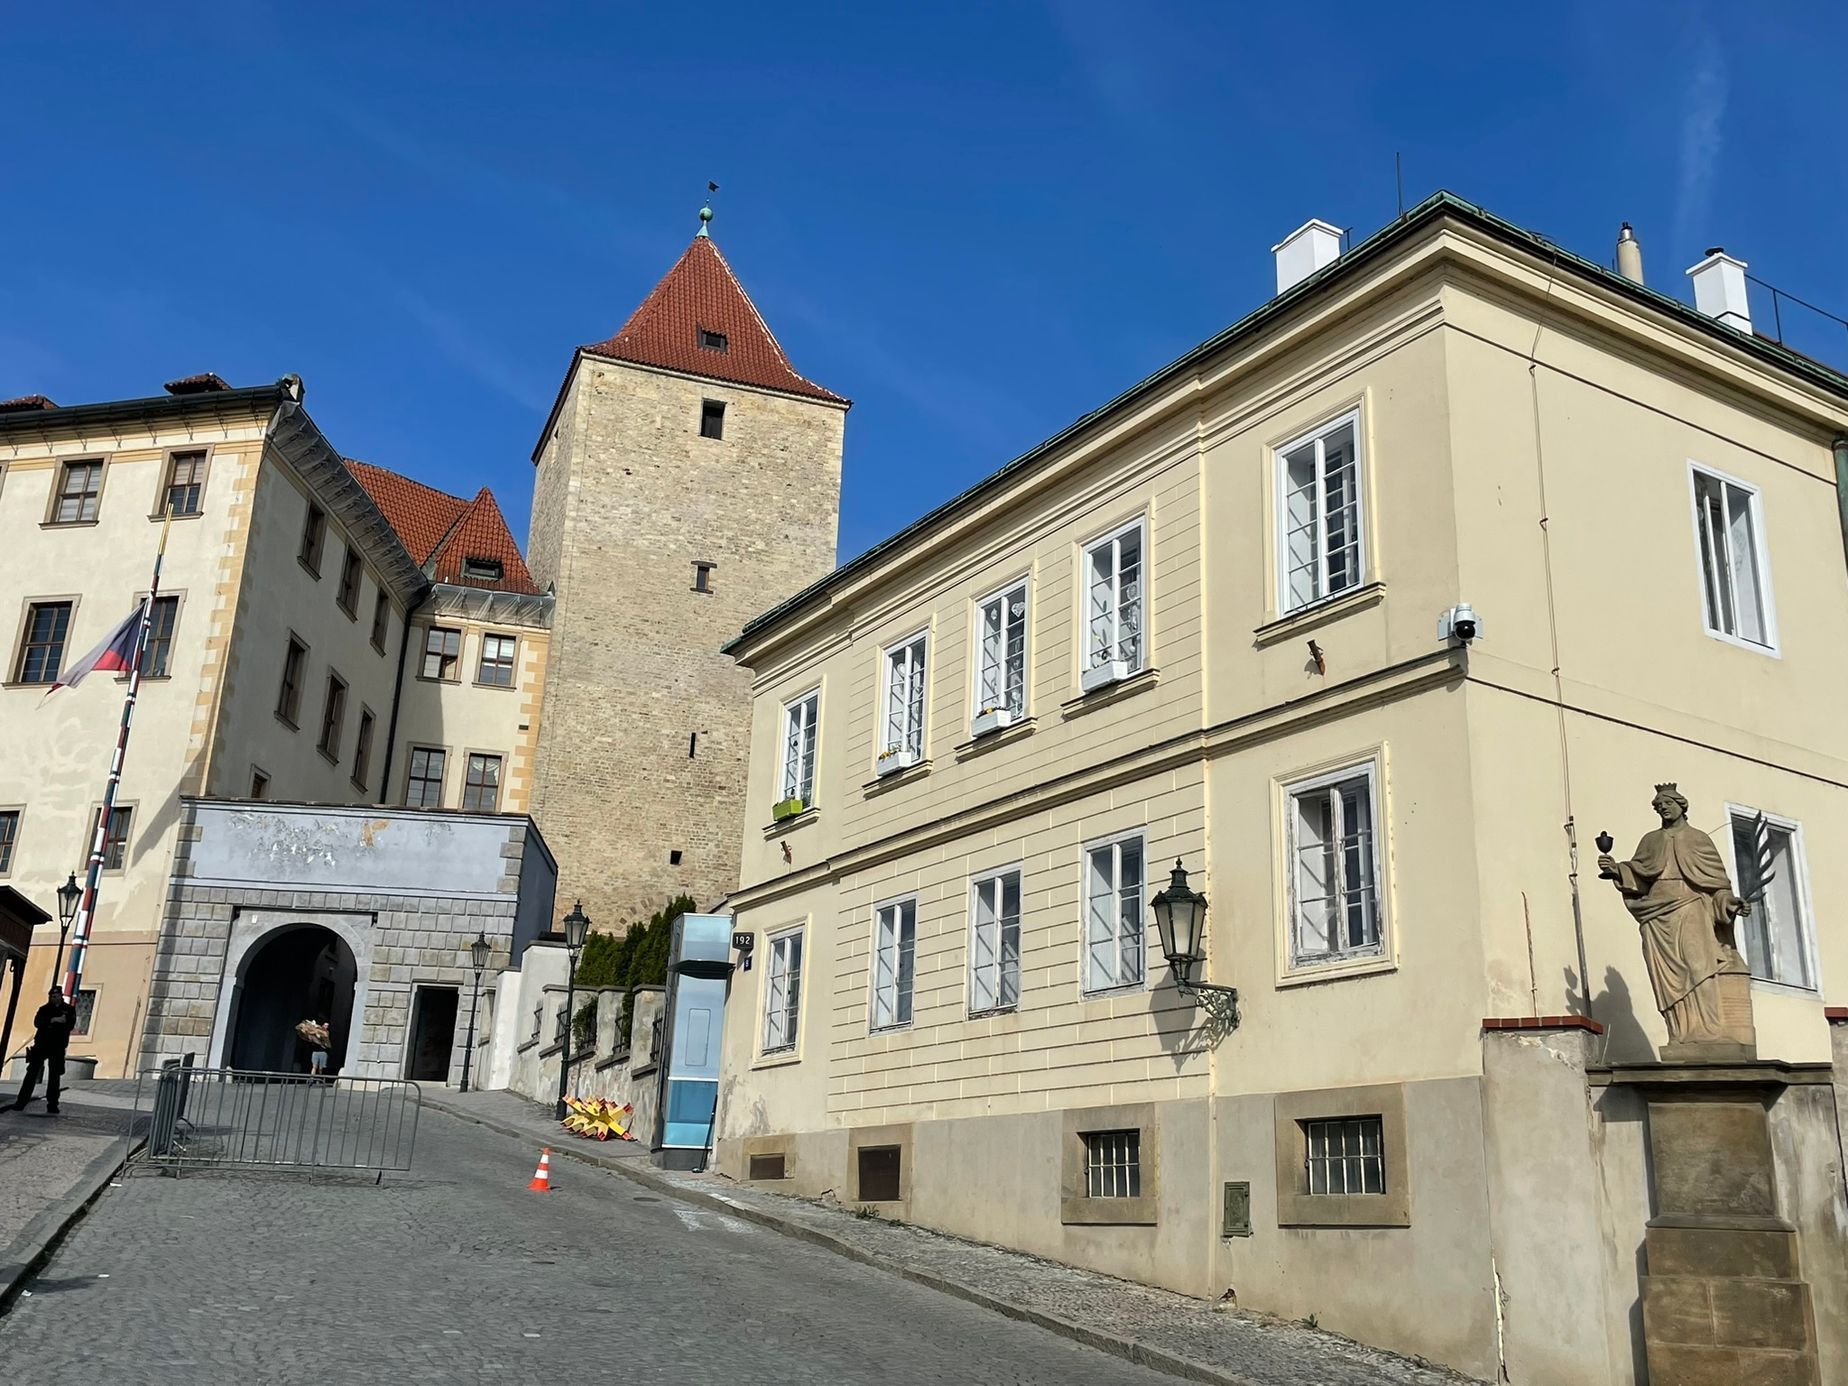 V tomto domě má jeden z bytů bývalá kancléřka Jana Vohralíková. Dům stojí nad starými zámeckými schody těsně před vstupem do areálu Pražského hradu z východní strany.